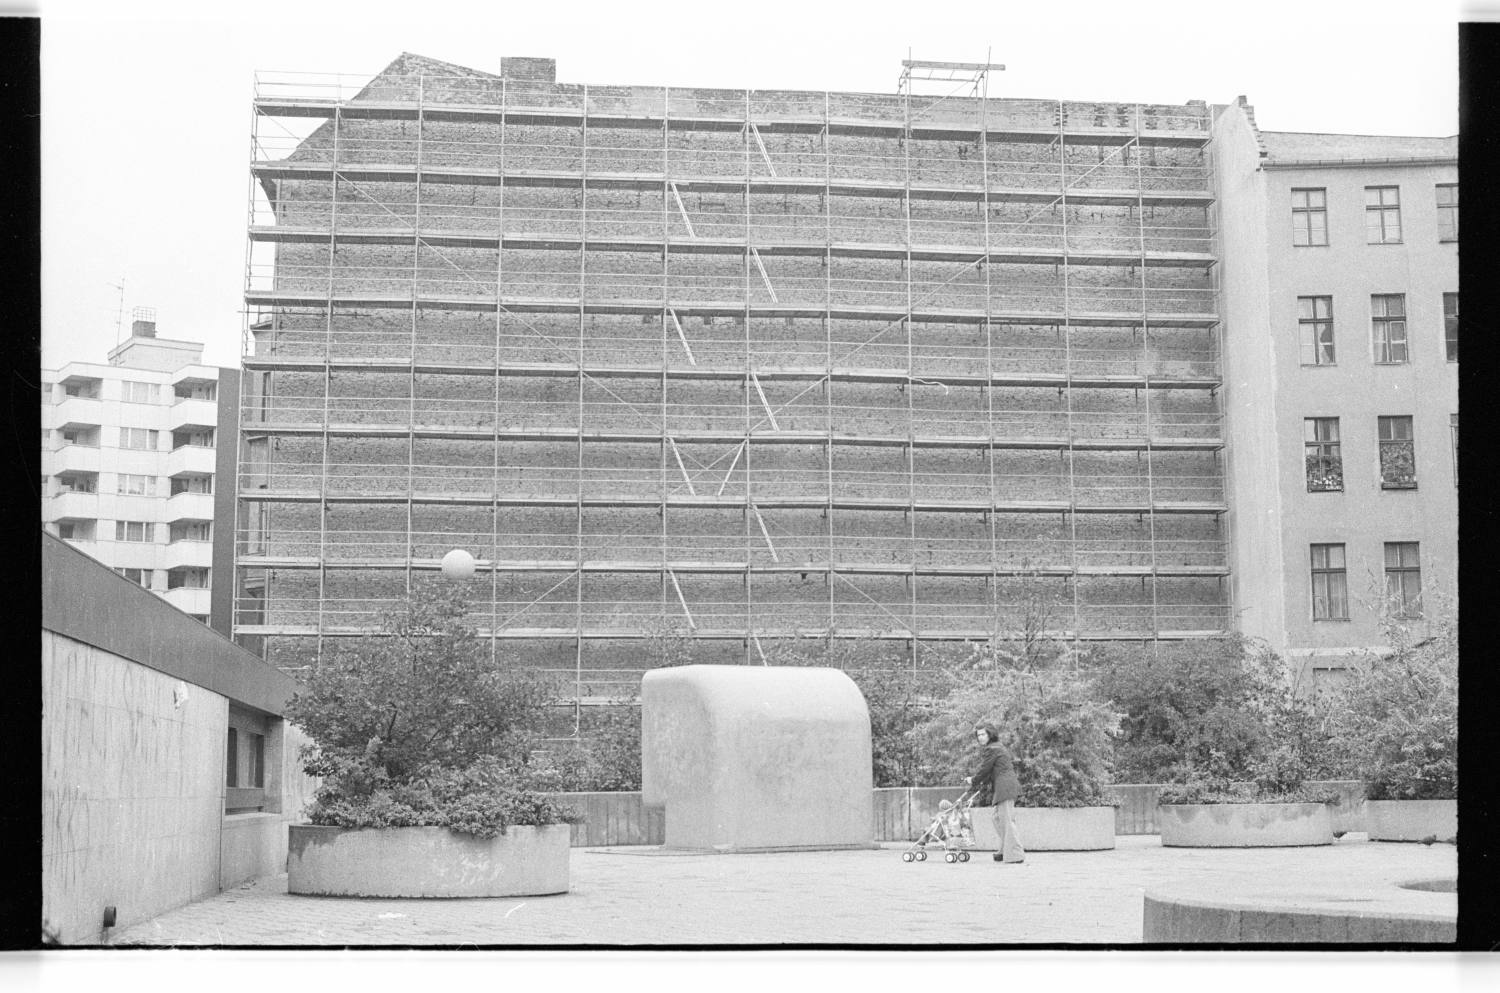 Kleinbildnegative: Giebelfassade eines Wohnhauses, 1978 (Museen Tempelhof-Schöneberg/Jürgen Henschel RR-F)